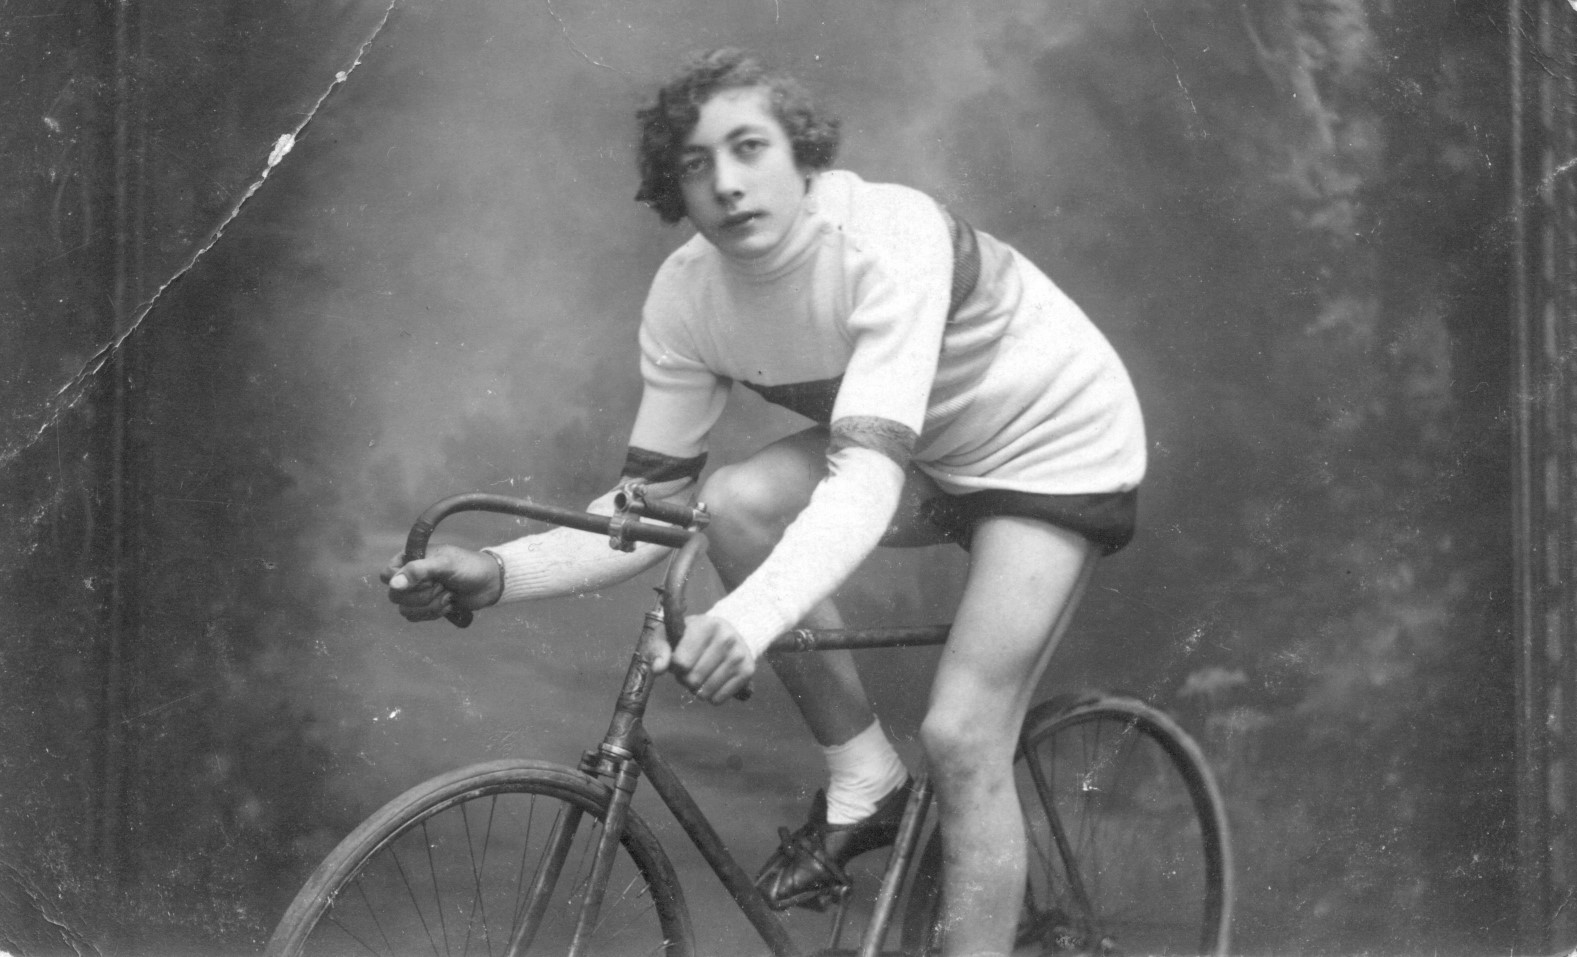 Wielrenster Elvire De Bruyn (1914-1989) uit Erembodegem bij Aalst, wereldkampioene wielrennen bij de vrouwen in 1934 en 1936, veranderde in 1937 van geslacht en werd toen Willy De Bruyn.